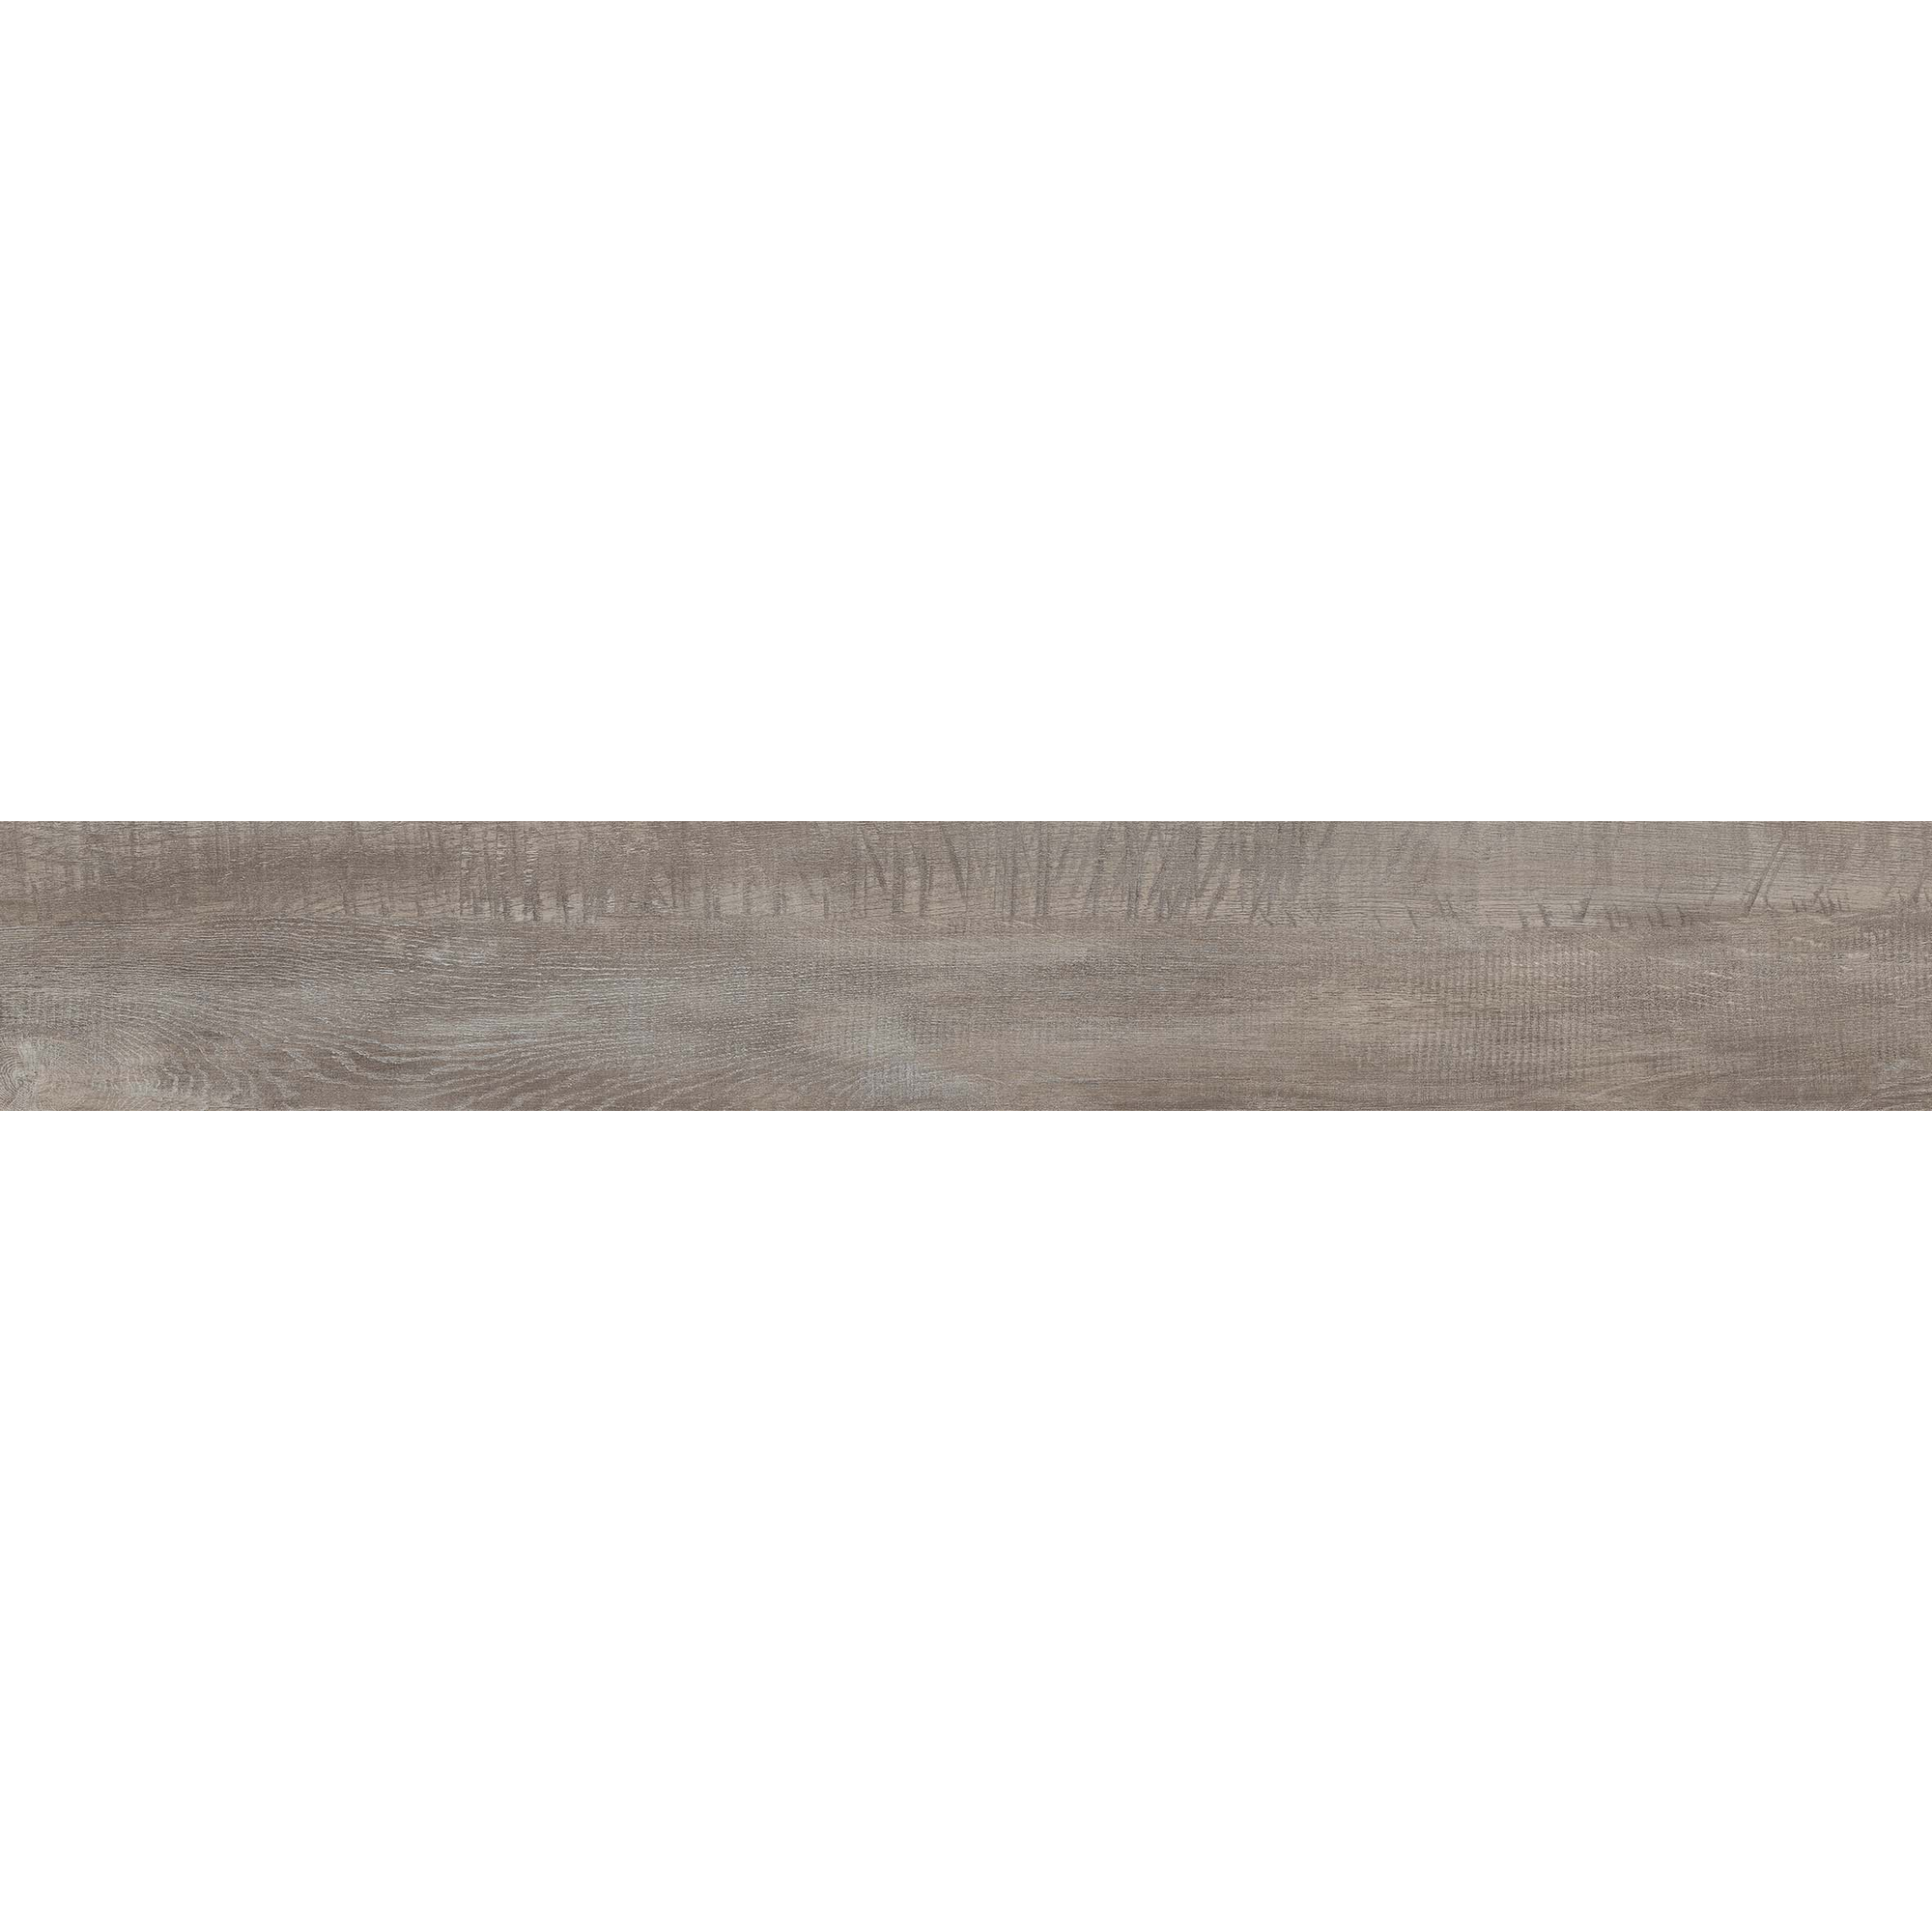 Vinylboden 'Comfort' Thunder Oak Cliff grau 10,5 mm + product picture